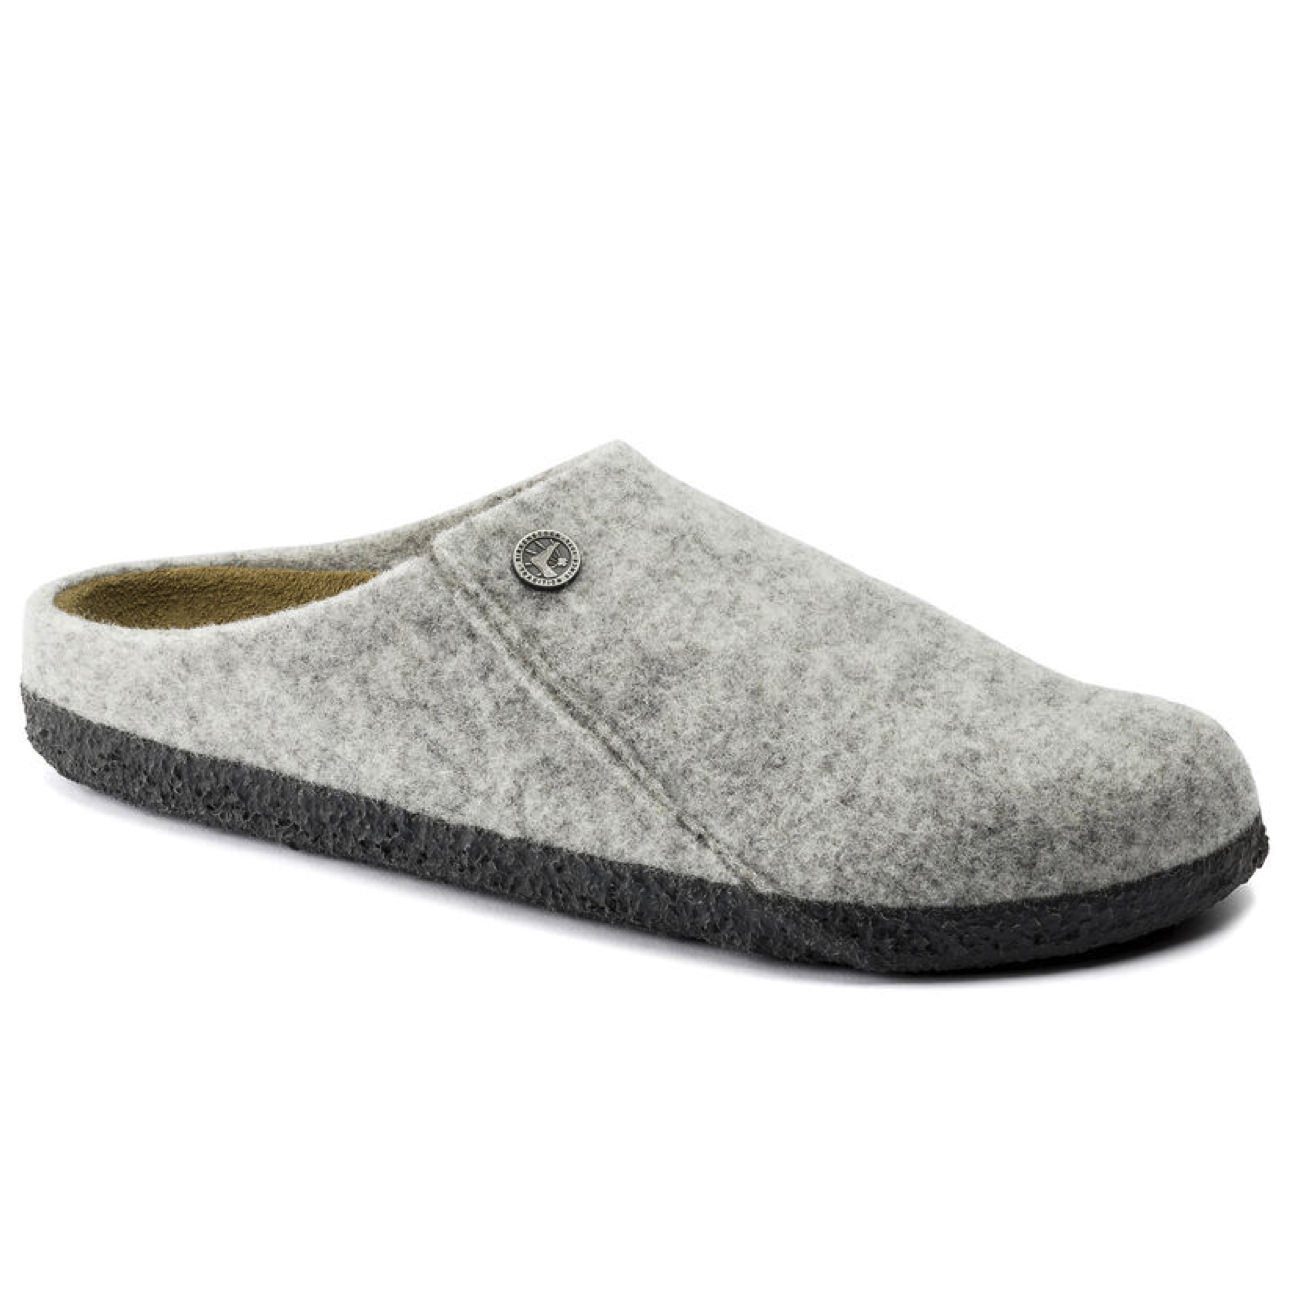 Birkenstock Seasonal, Zermatt, Wool Felt, Narrow Fit, Light Grey House Shoes Birkenstock Seasonal Light Grey 38 